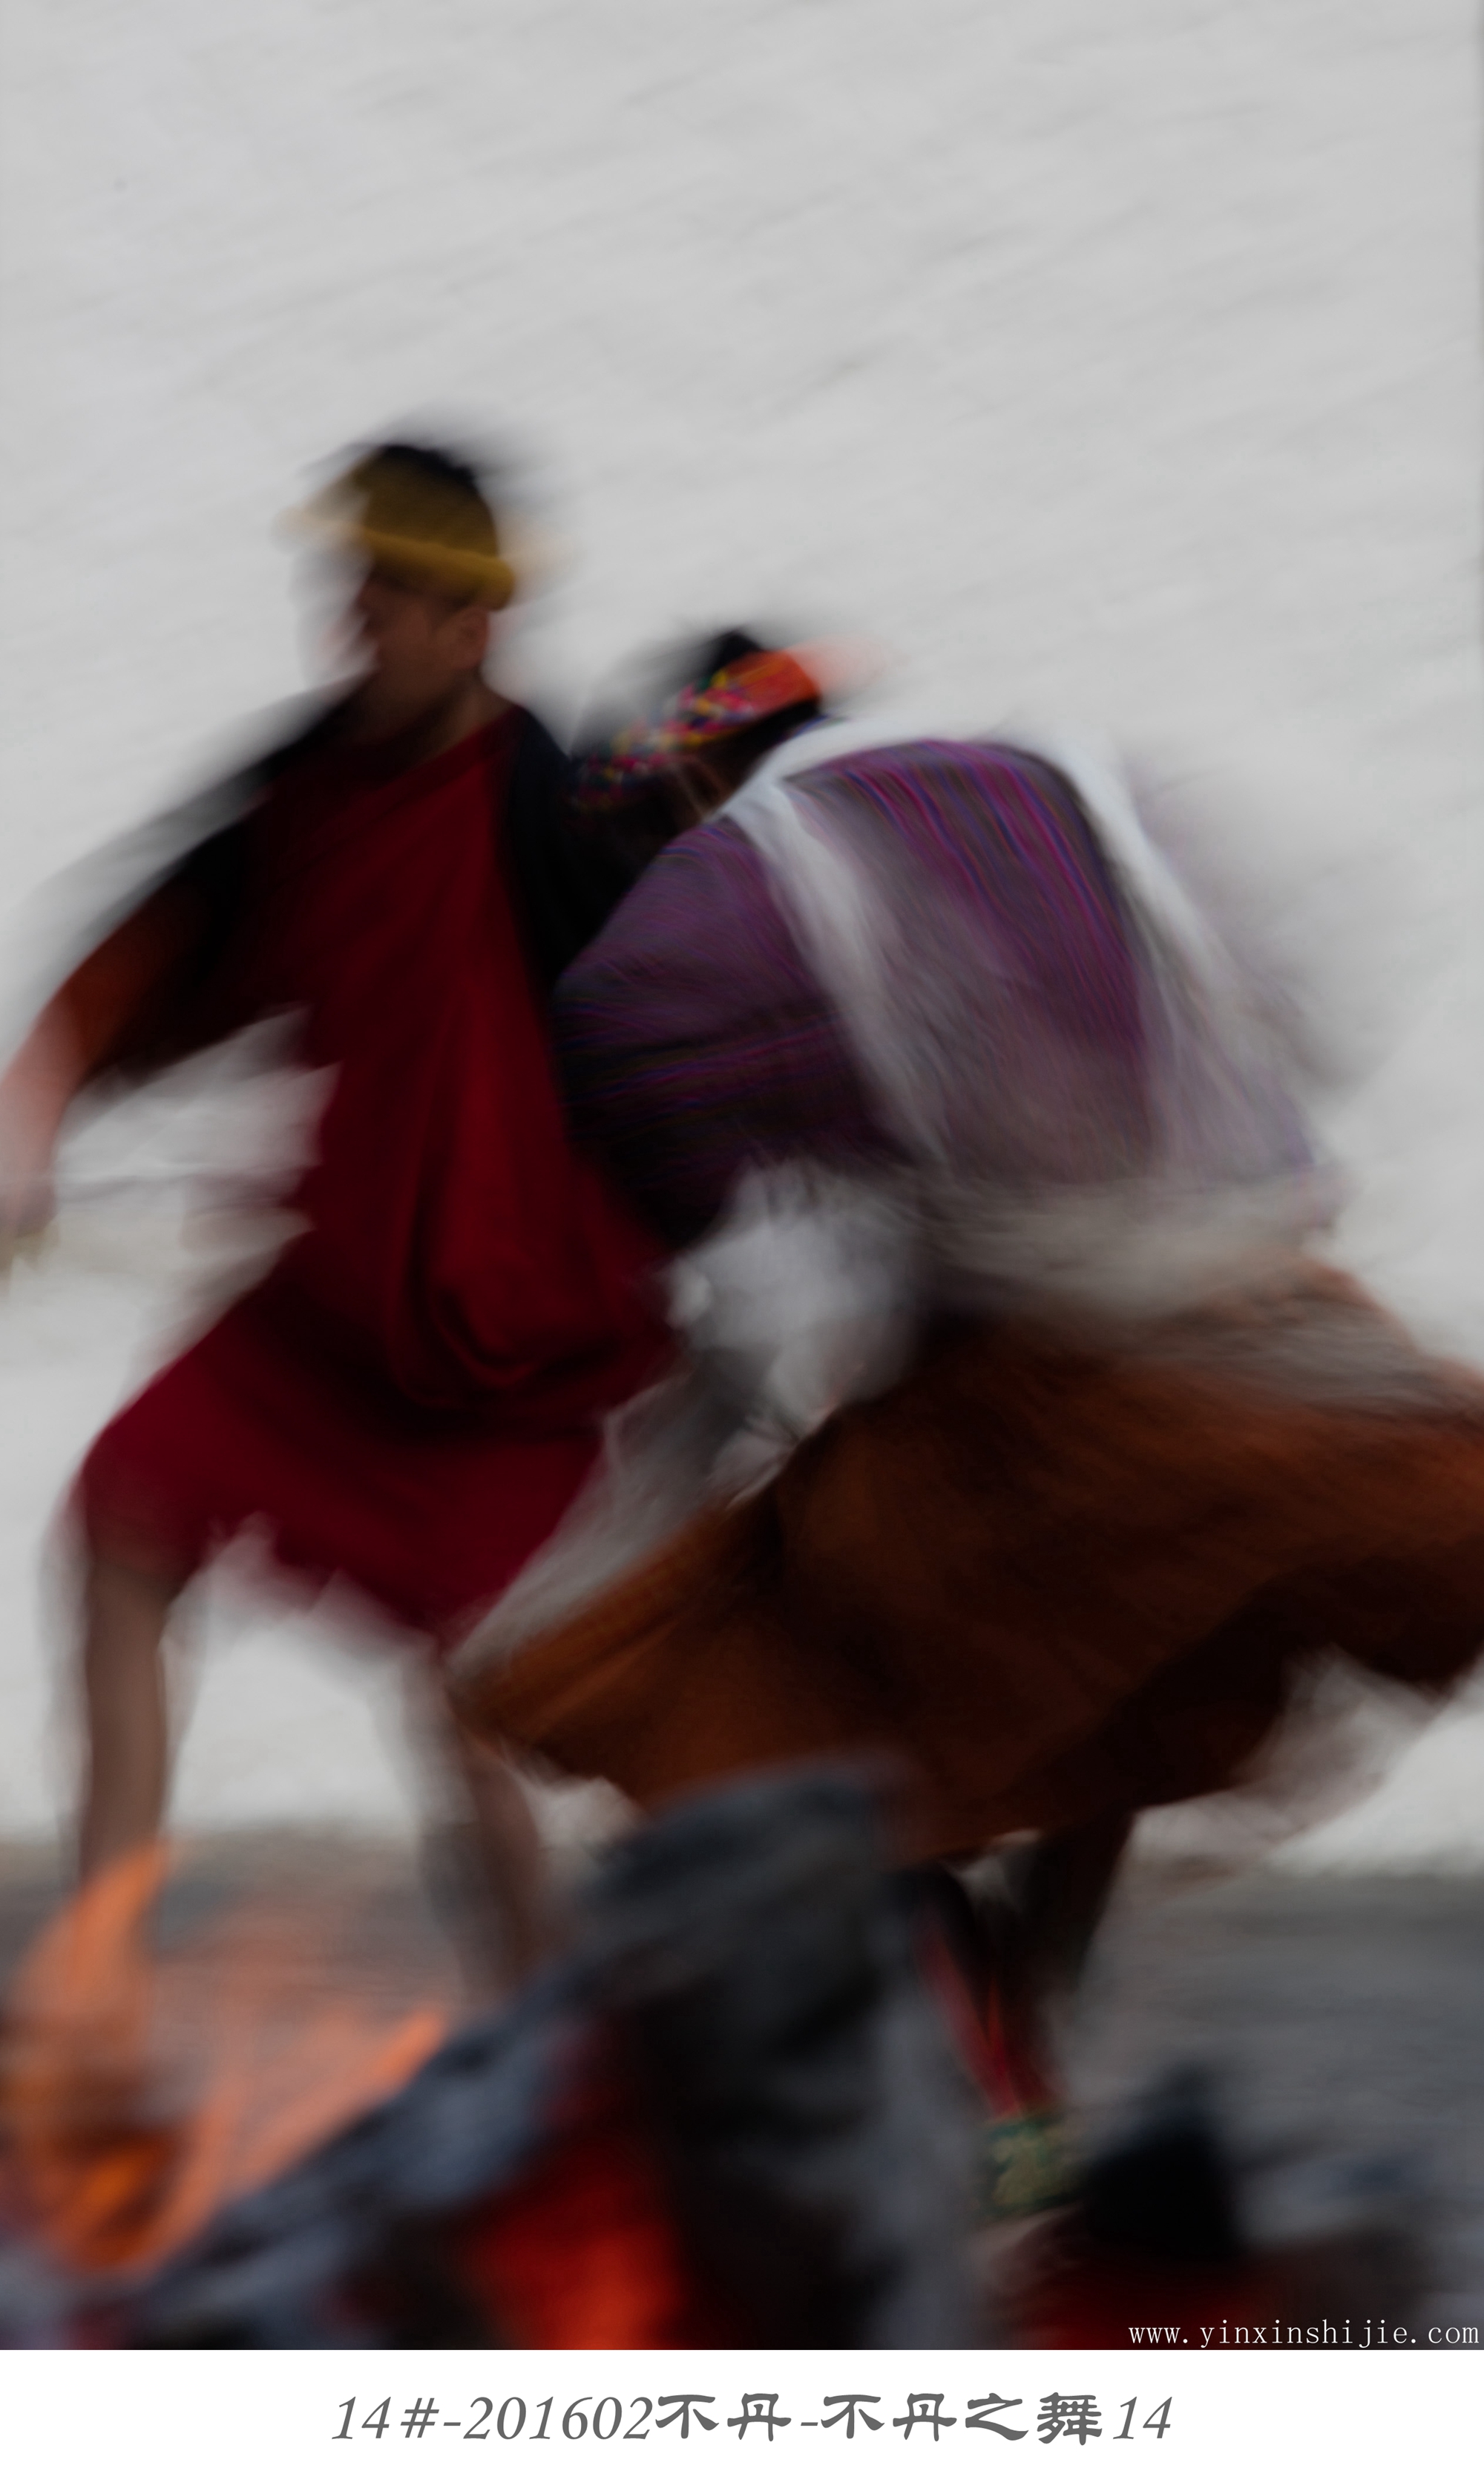 14#-201602不丹-不丹之舞14